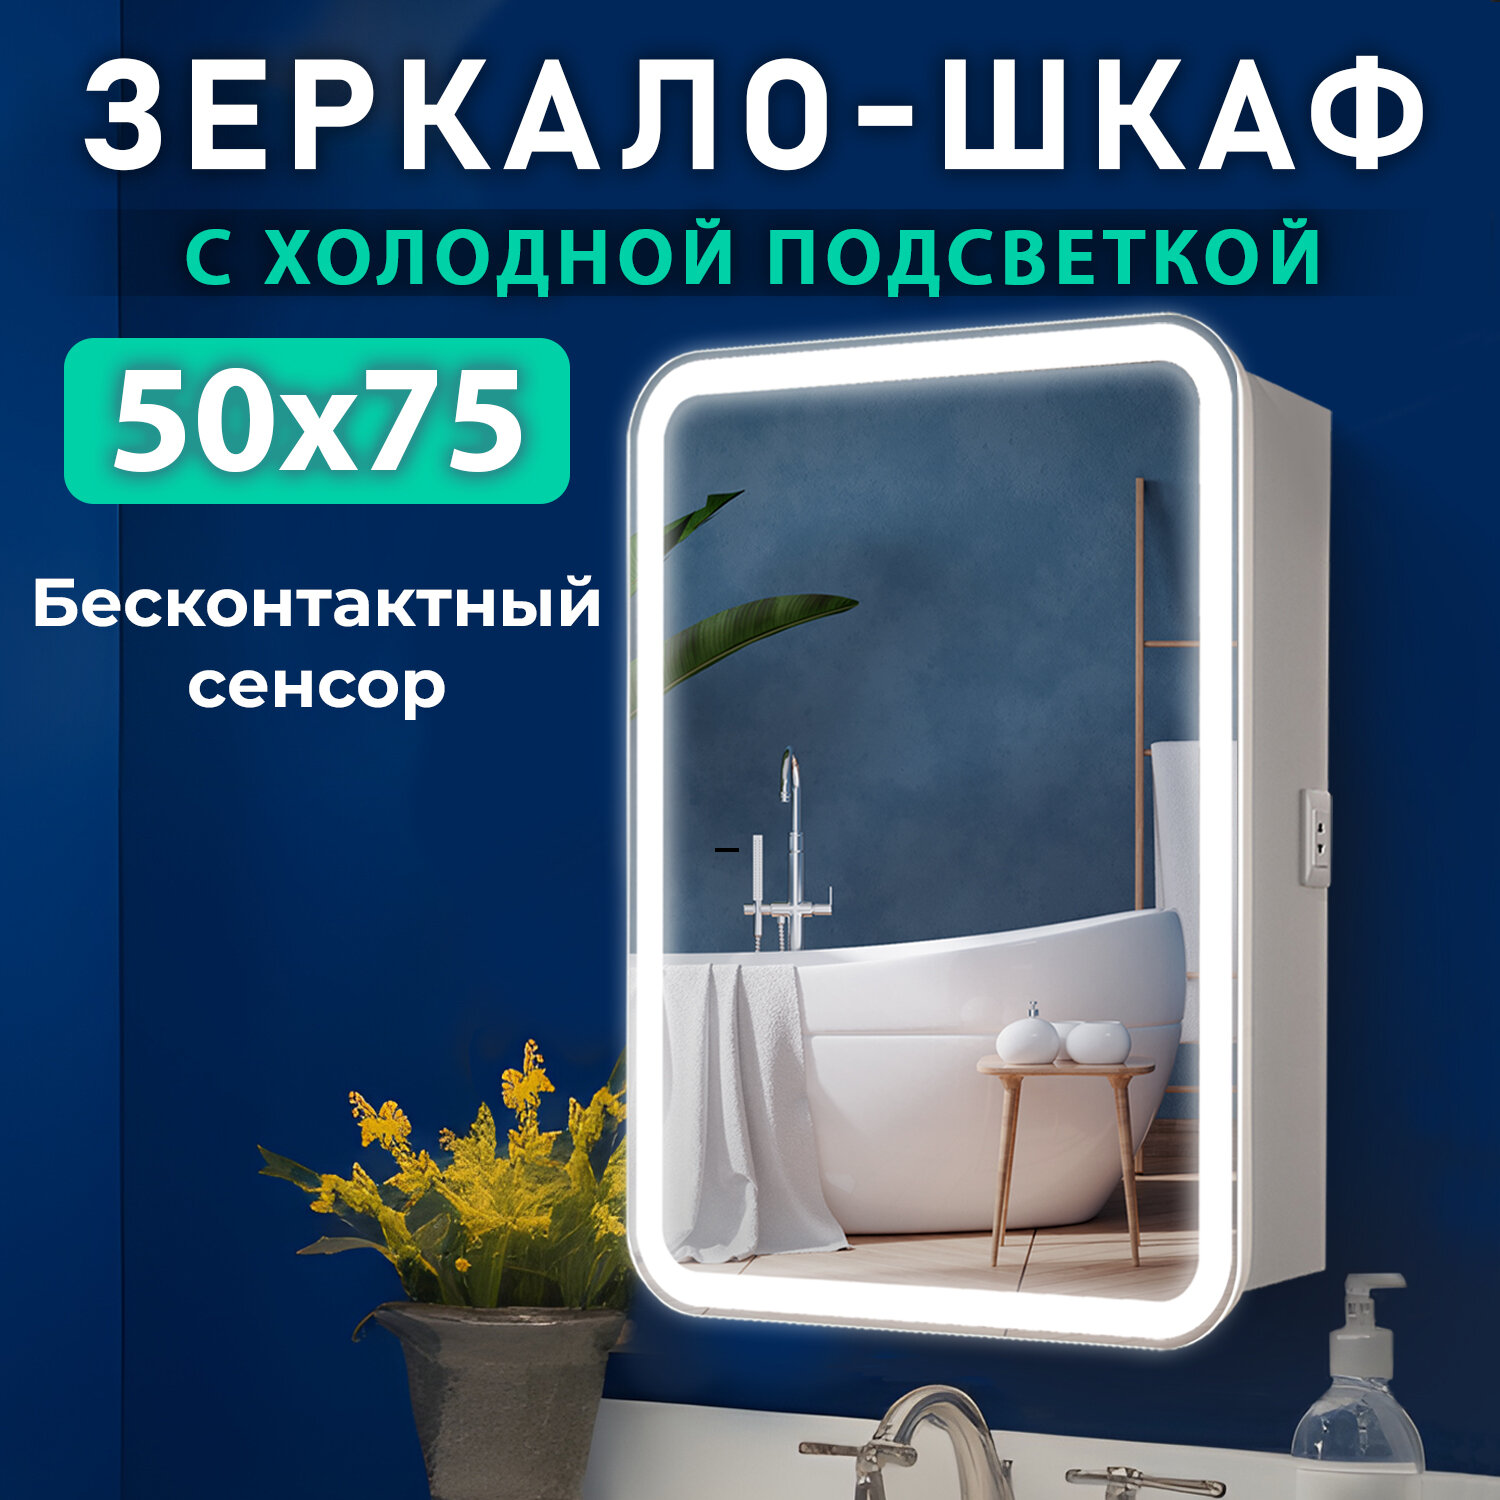 Зеркало шкаф в ванную с подсветкой Silver Mirrors "Джерси-Flip" 50 см, универсальная ориентация, бесконтактный сенсор, холодный свет, белый корпус